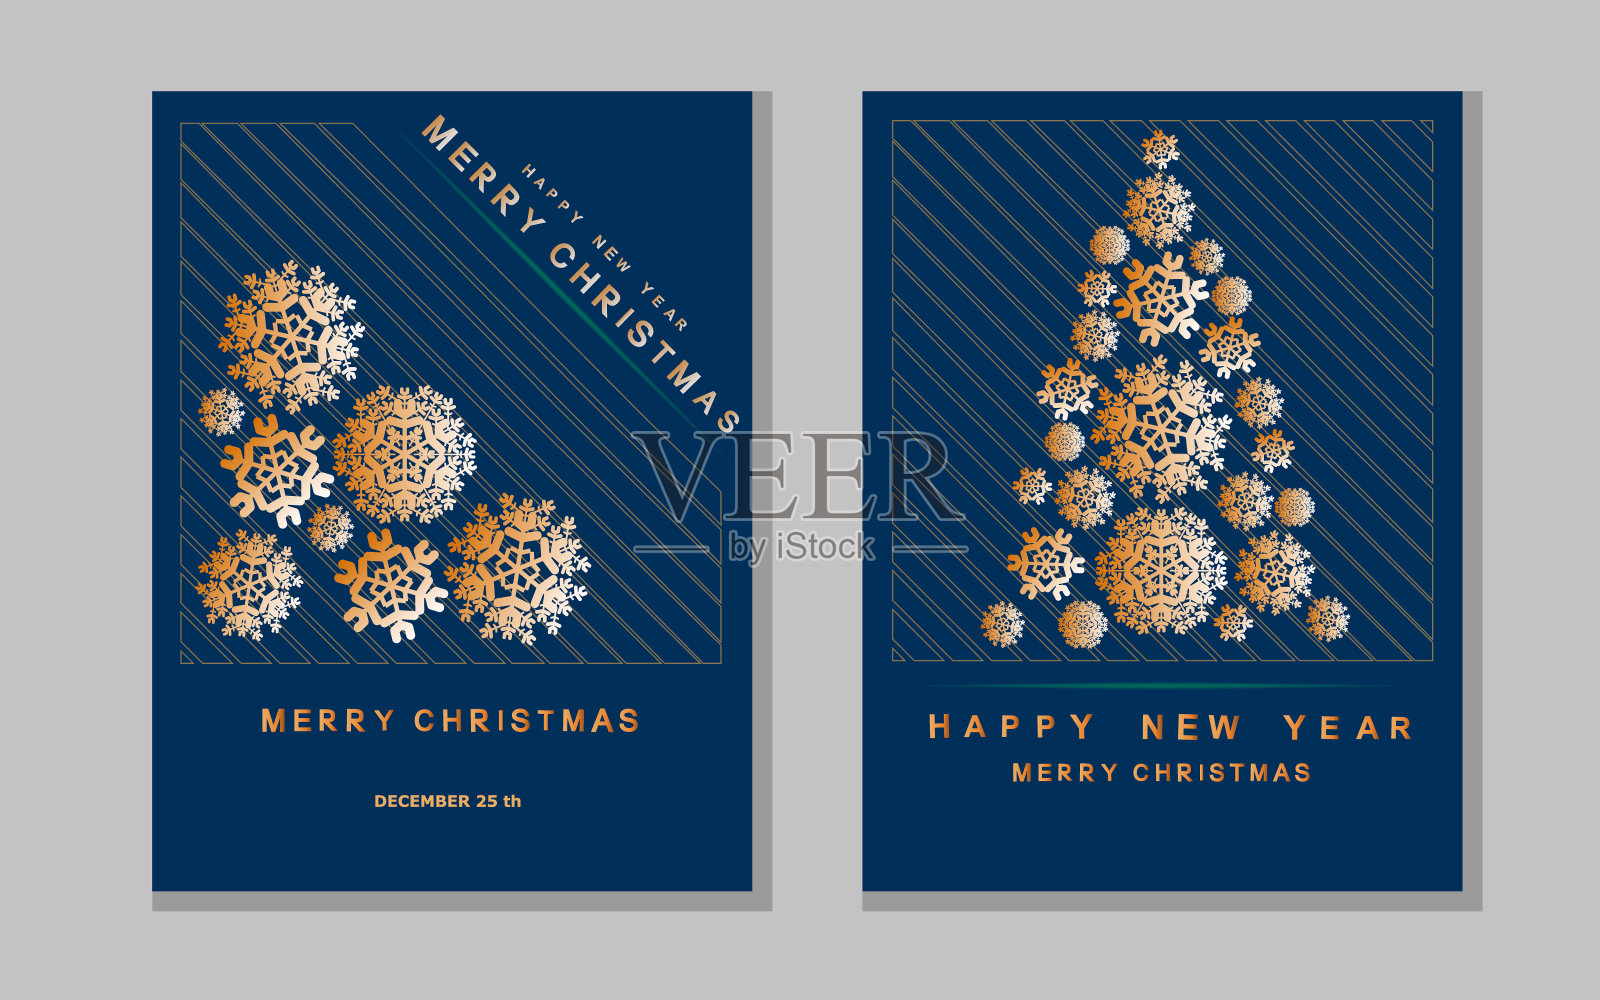 新年贺卡与抽象的圣诞树和雪花。设计模板素材